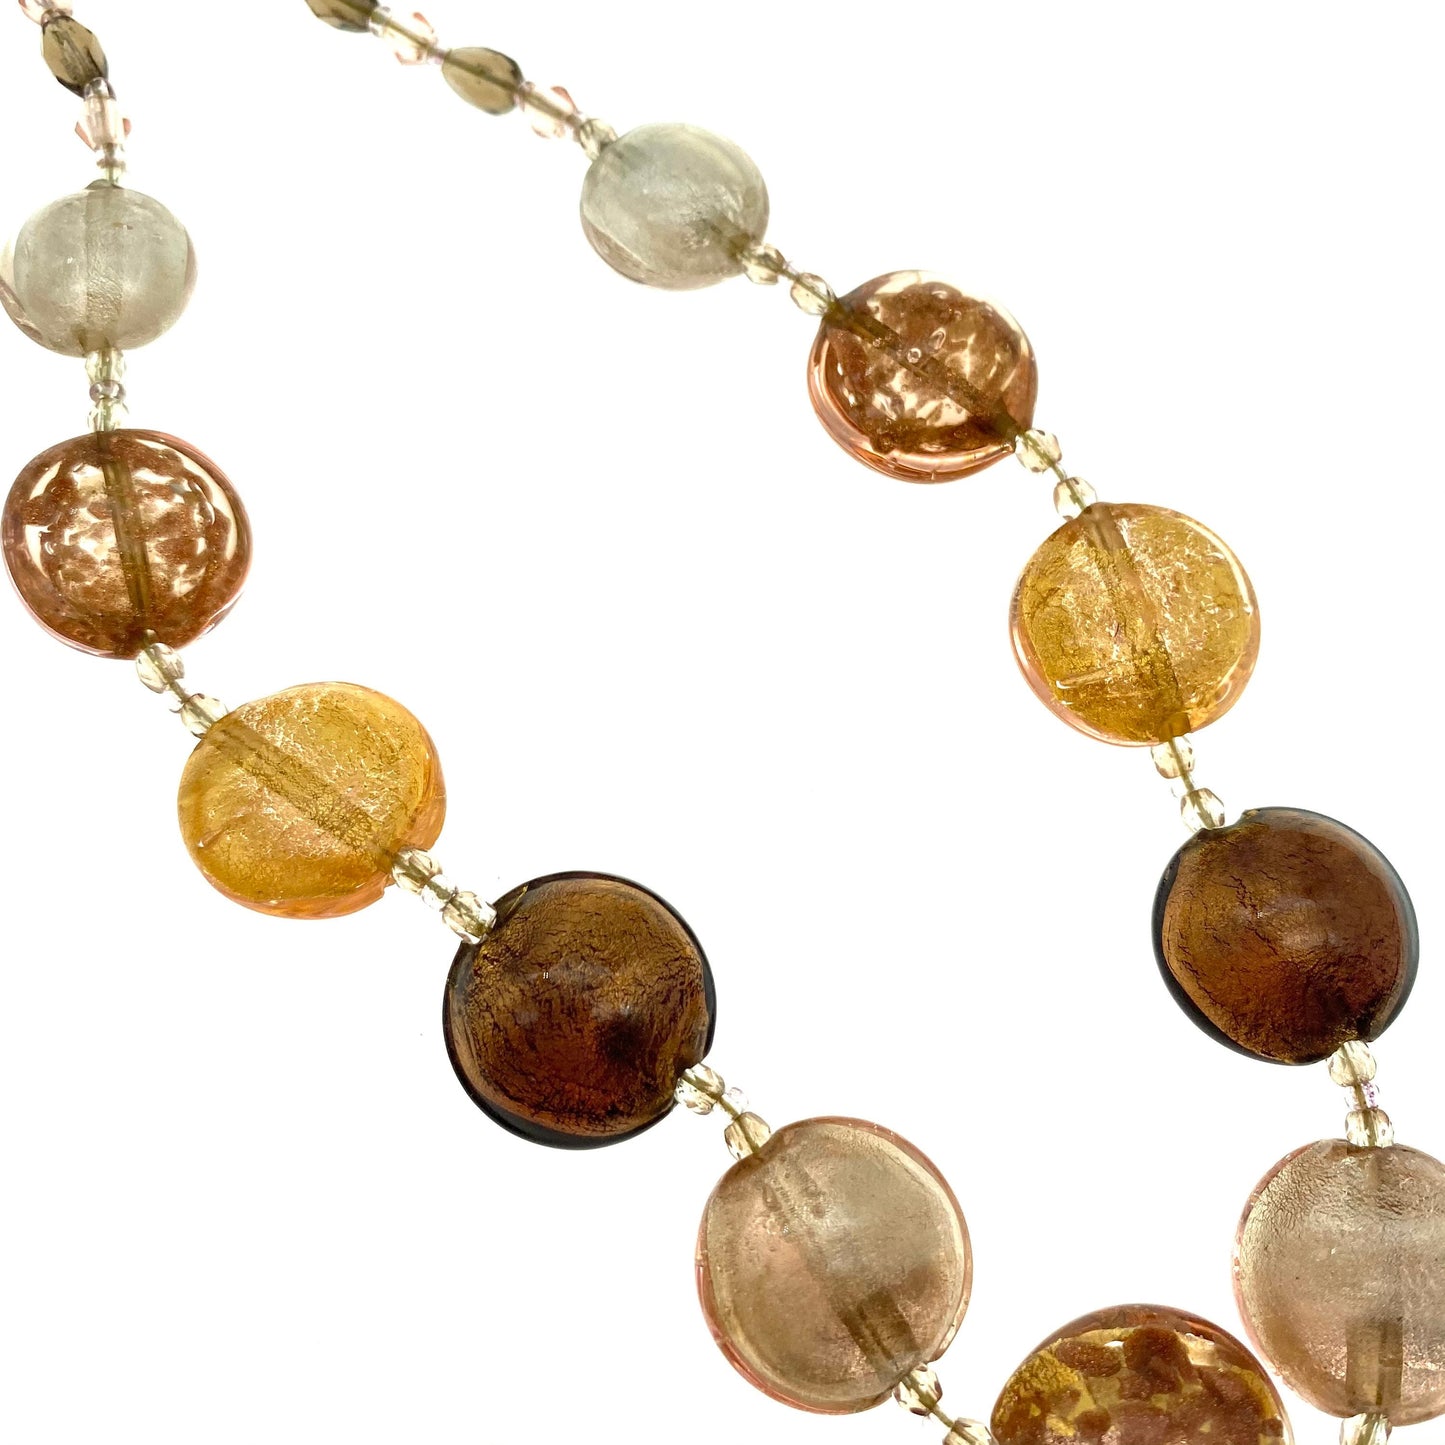 Le Perle 925 Vermeil, Or, Blanc et Cuivre Verre de Murano Vénitien, Fluss de Cuivre et Collier de Perles de Verre à Facettes